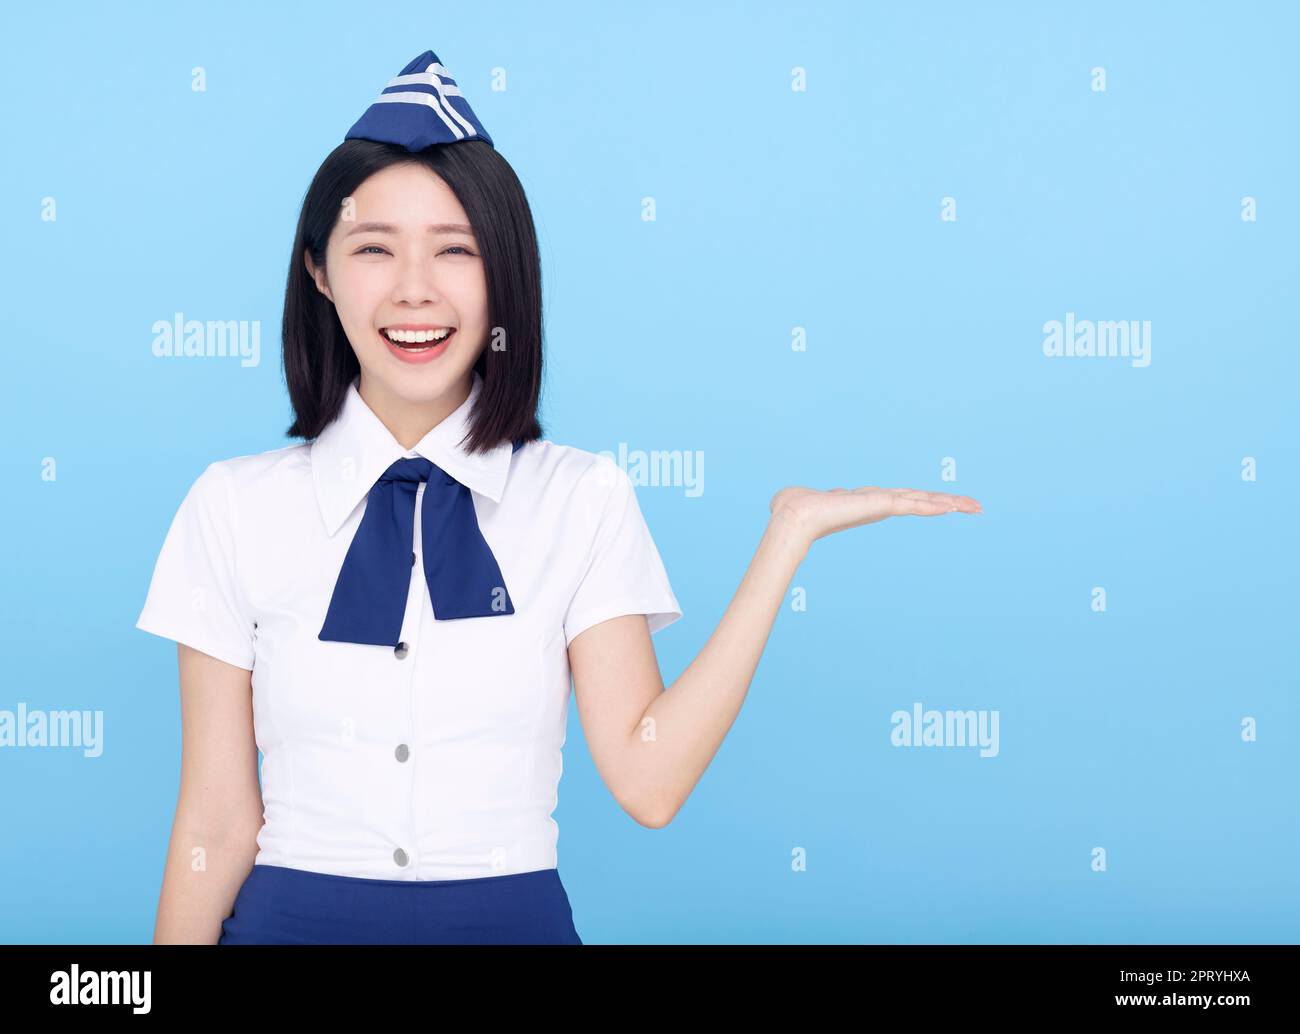 Happy Beautiful stewardess showing something on blue background Stock Photo